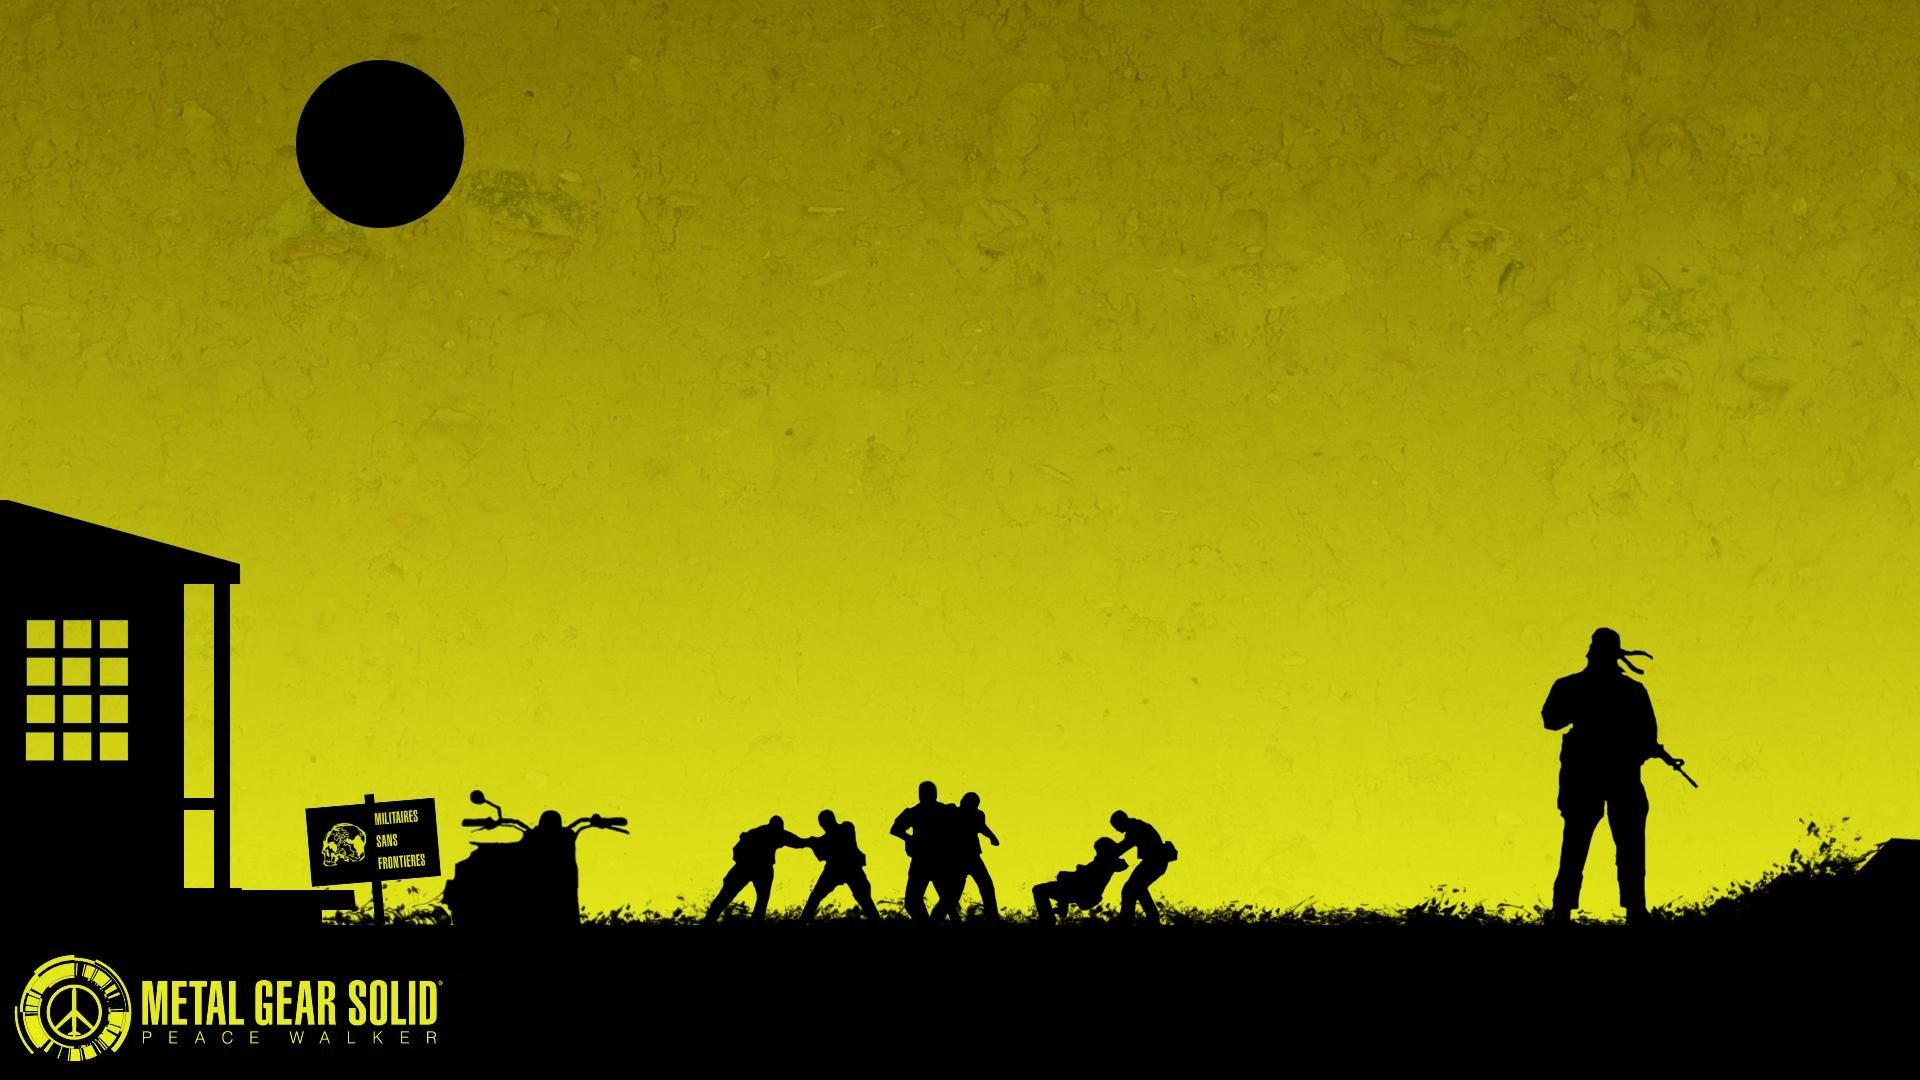 7 Metal Gear Solid Peace Walker HD Wallpapers Backgrounds